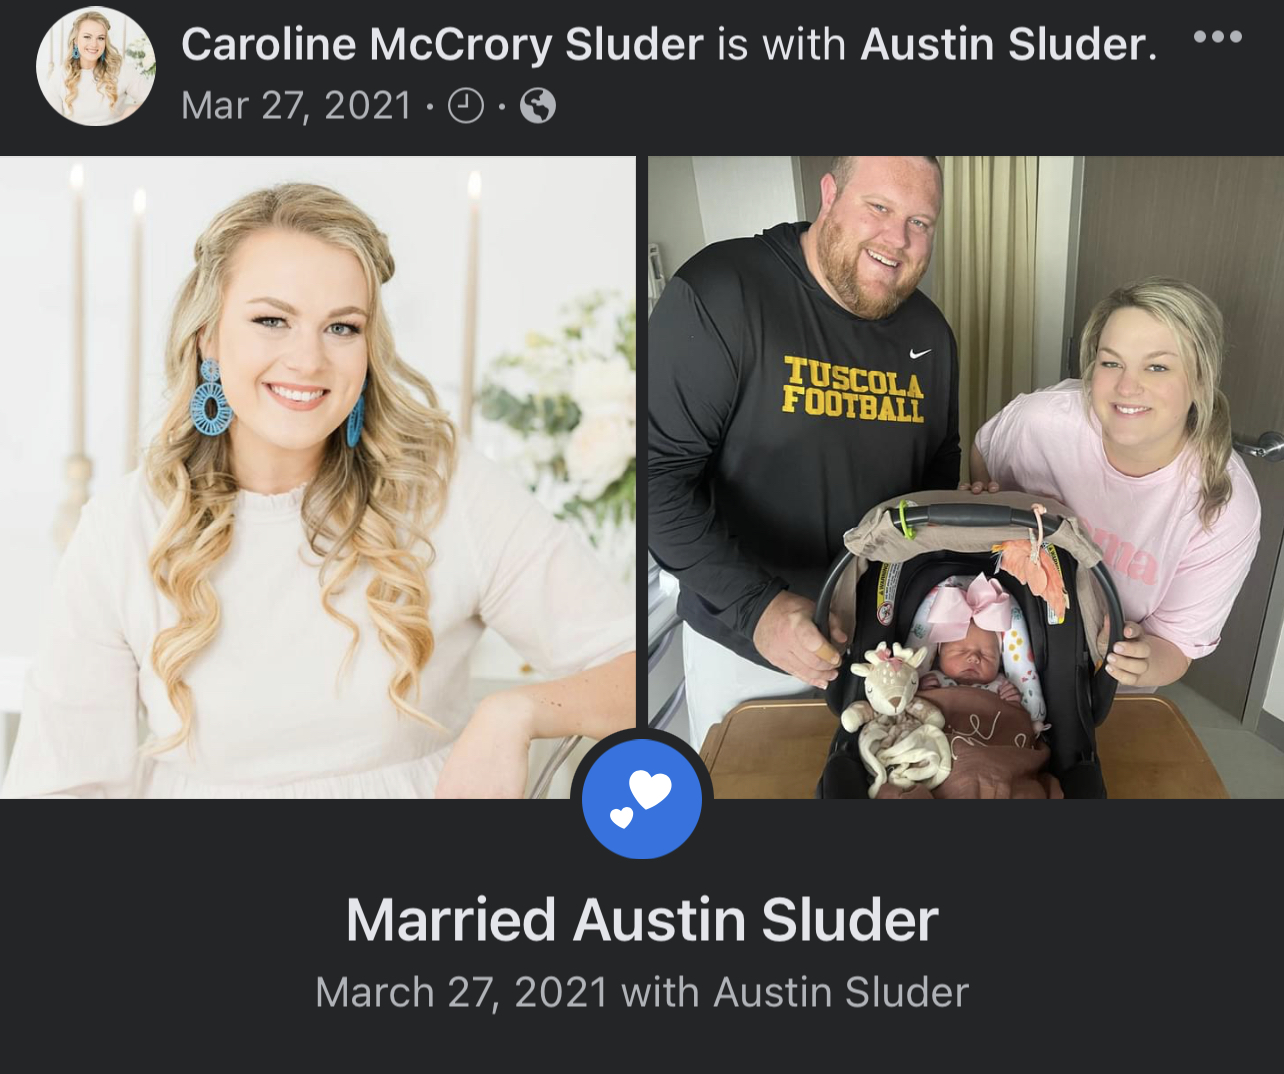 Caroline McCrory Sluder exposed